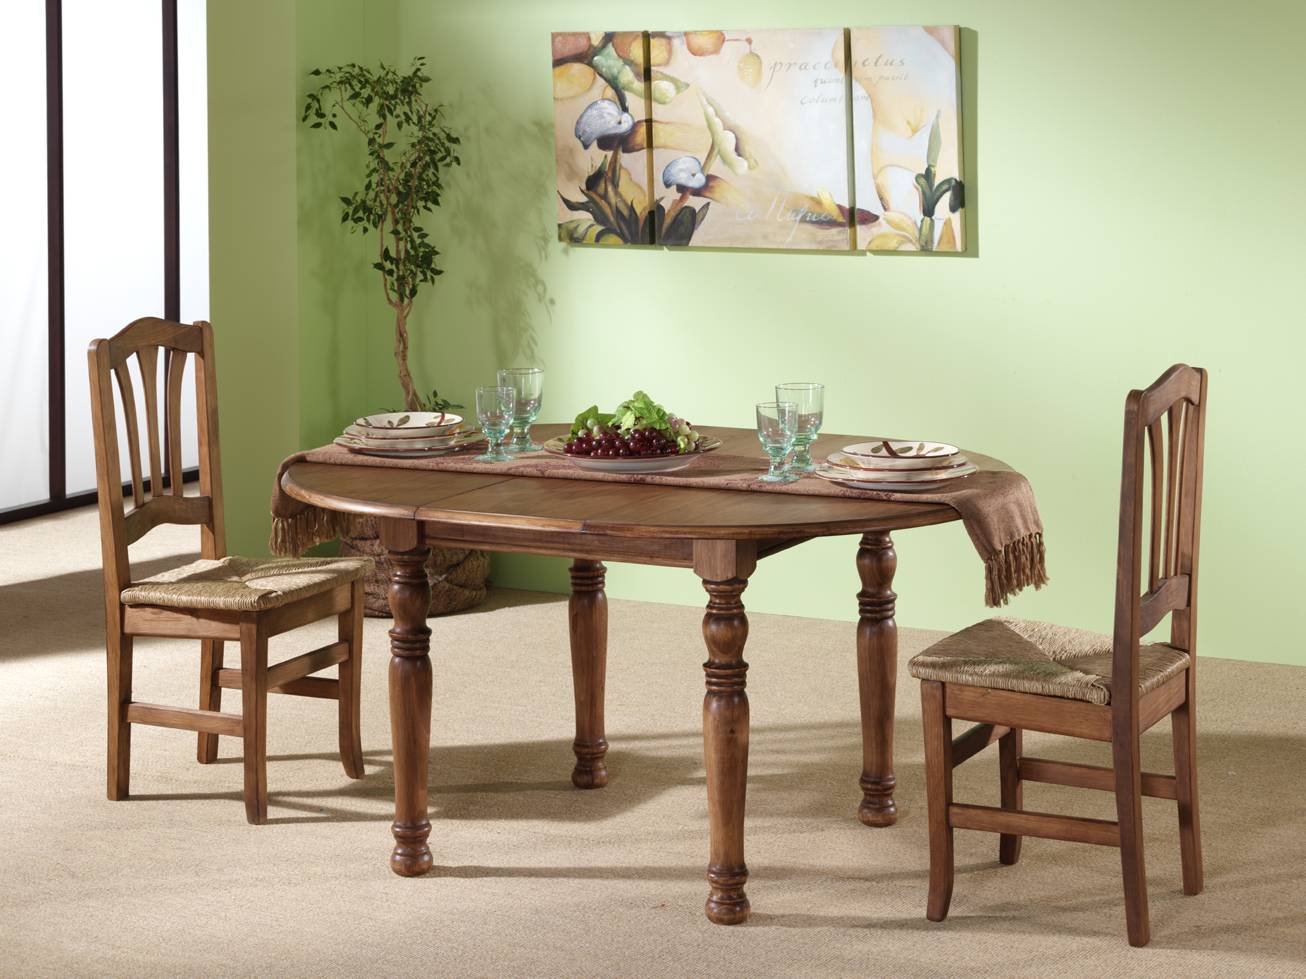 Mesa Extensible Patas Torneadas - Mesa de comedor redonda extensible, de madera de pino maciza, con patas torneadas. Disponible en varios colores.